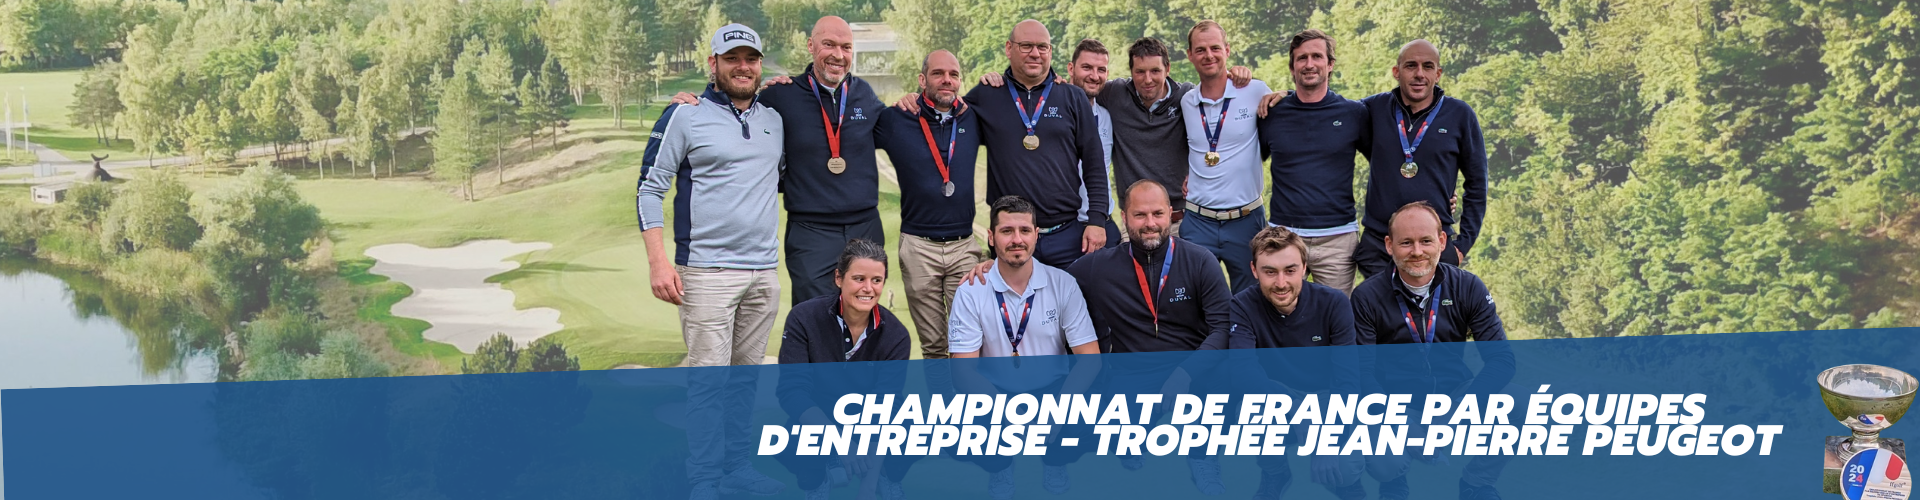 Championnat de France par équipes d'entreprise - Trophée Jean-Pierre Peugeot